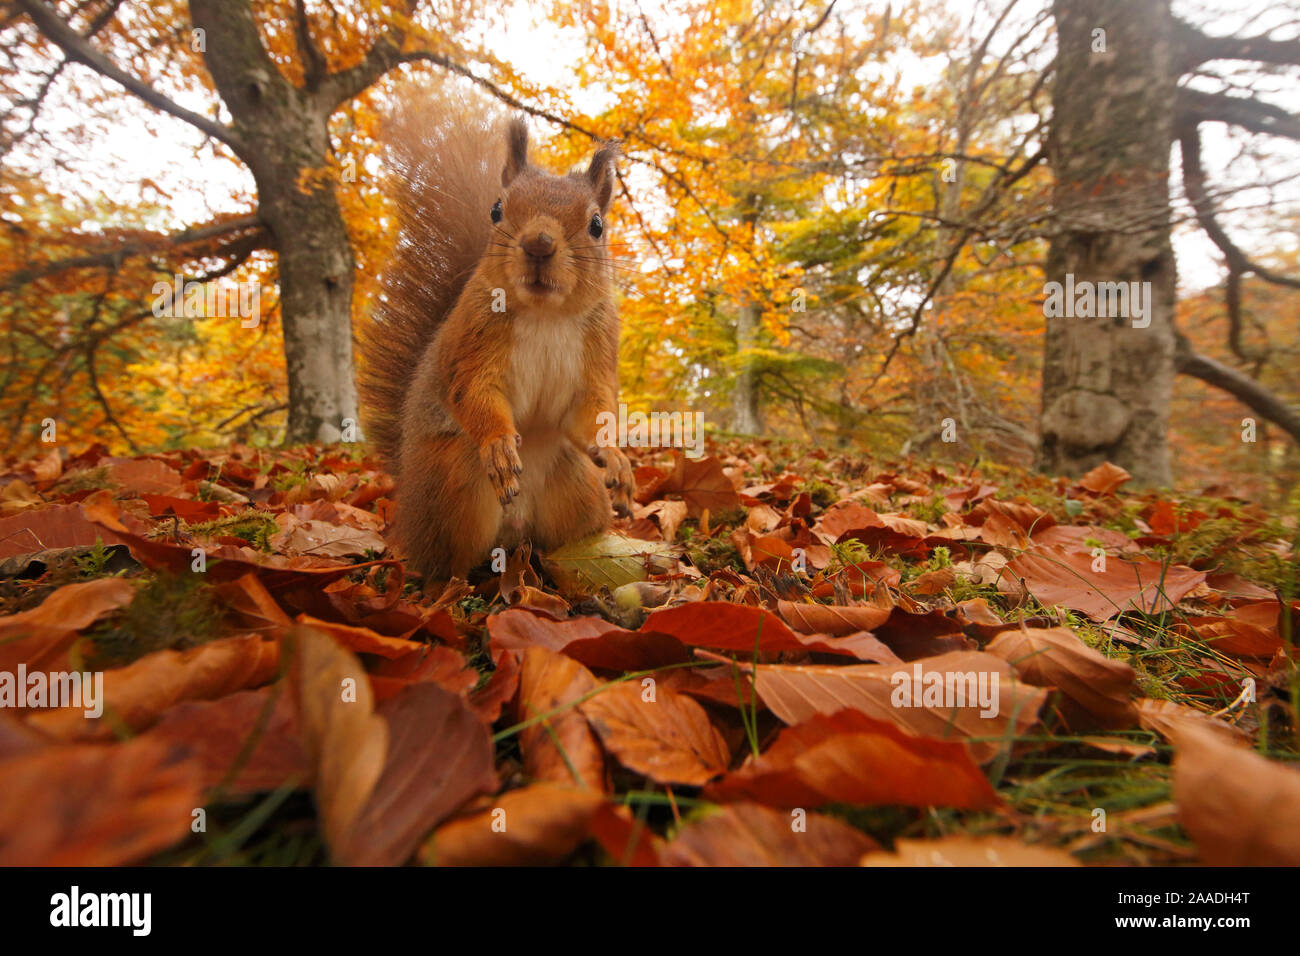 Red scoiattolo (Sciurus vulgaris) nella figliata di foglia nel bosco autunnale, altopiani, Cairngorms National Park, Scozia, Regno Unito, ottobre 2015. Foto Stock